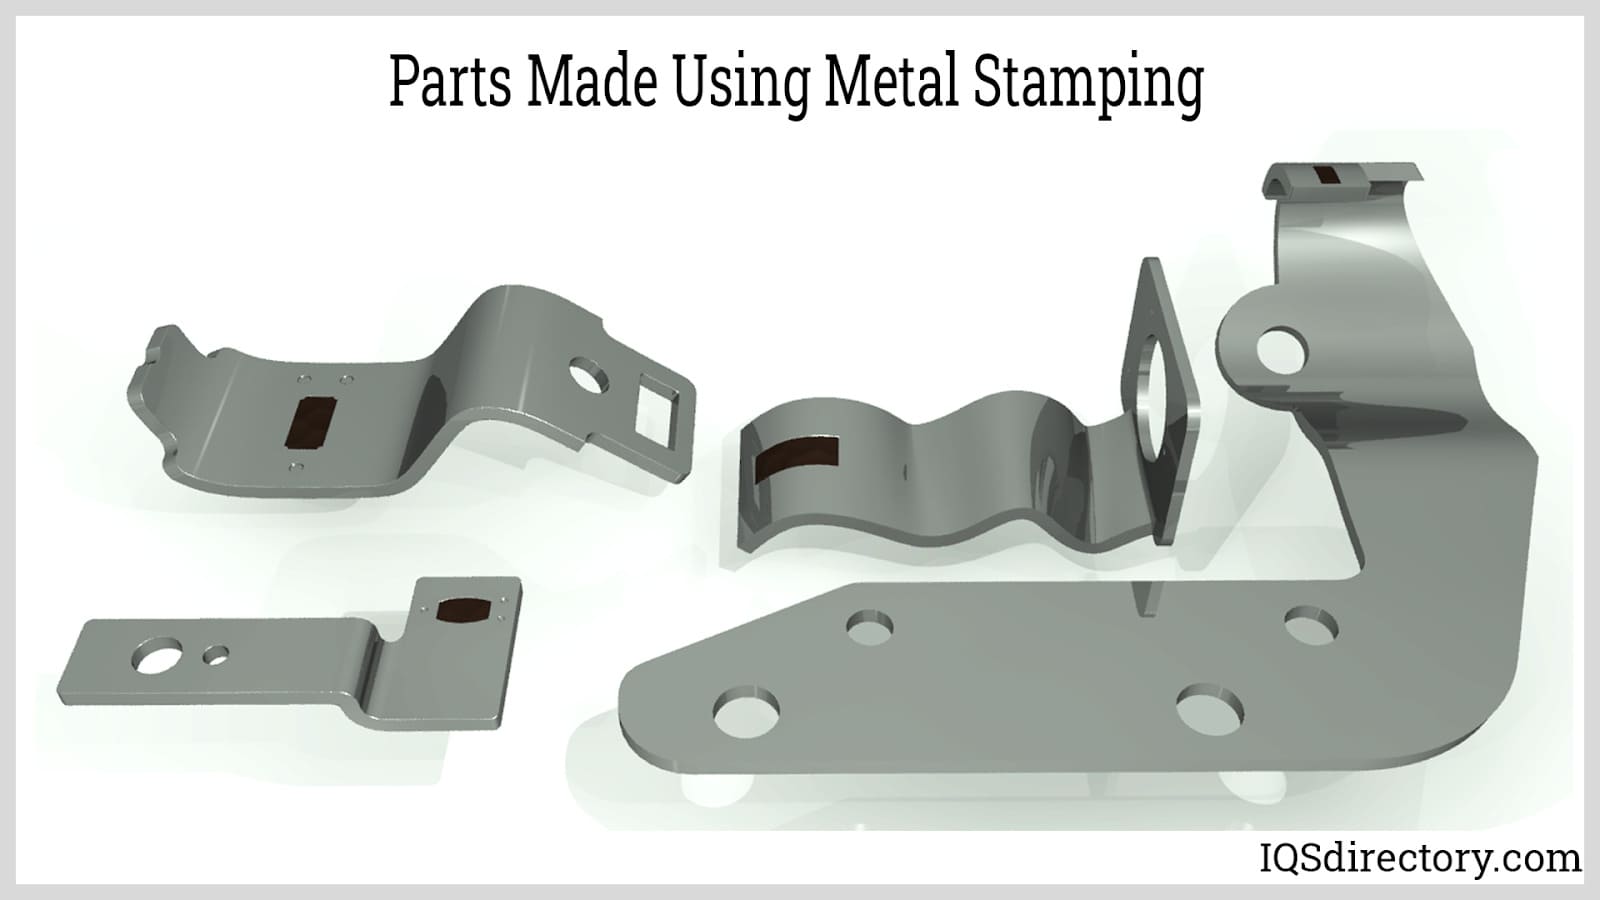 Parts Made Using Metal Stamping